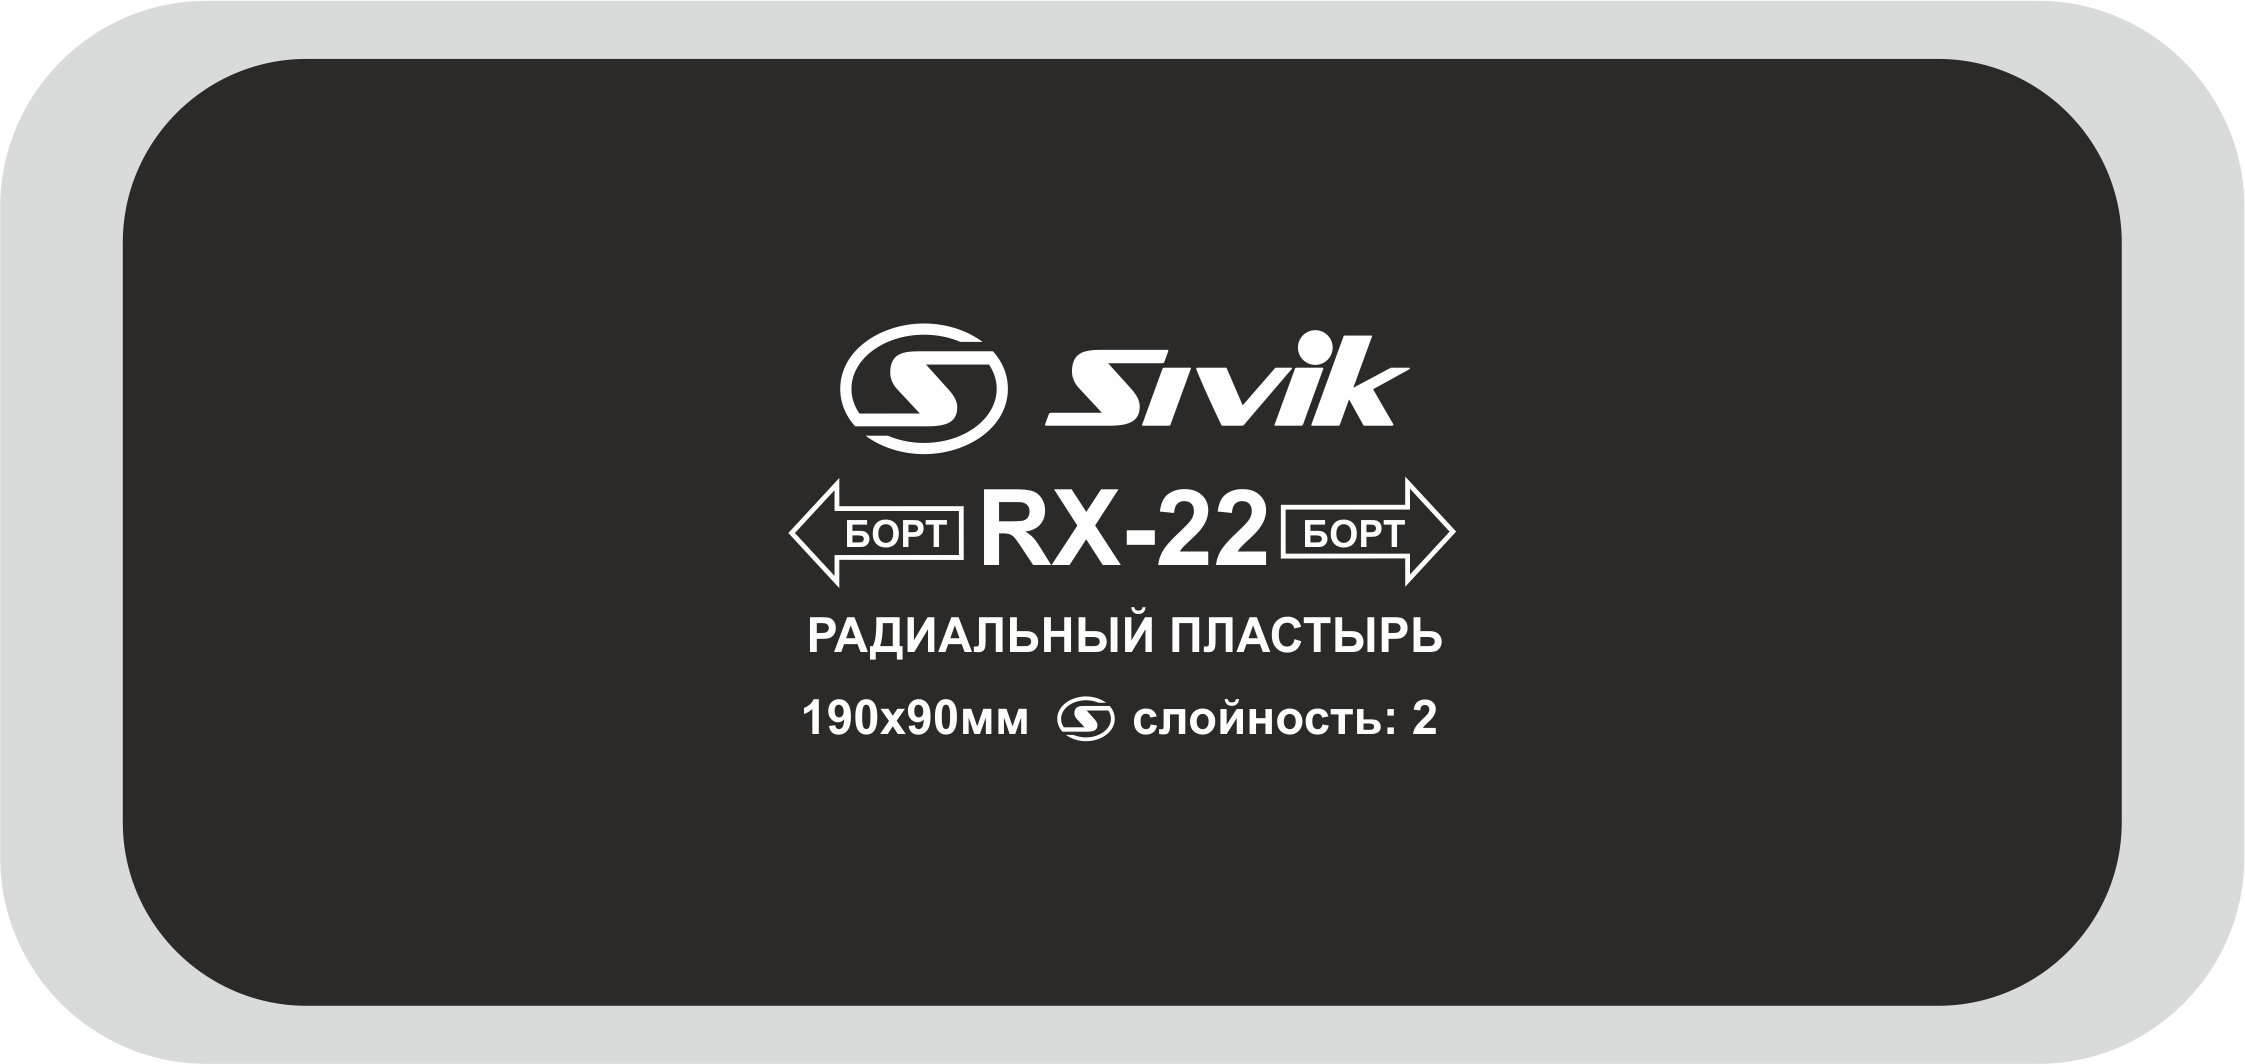 Пластырь радиальный RX-22